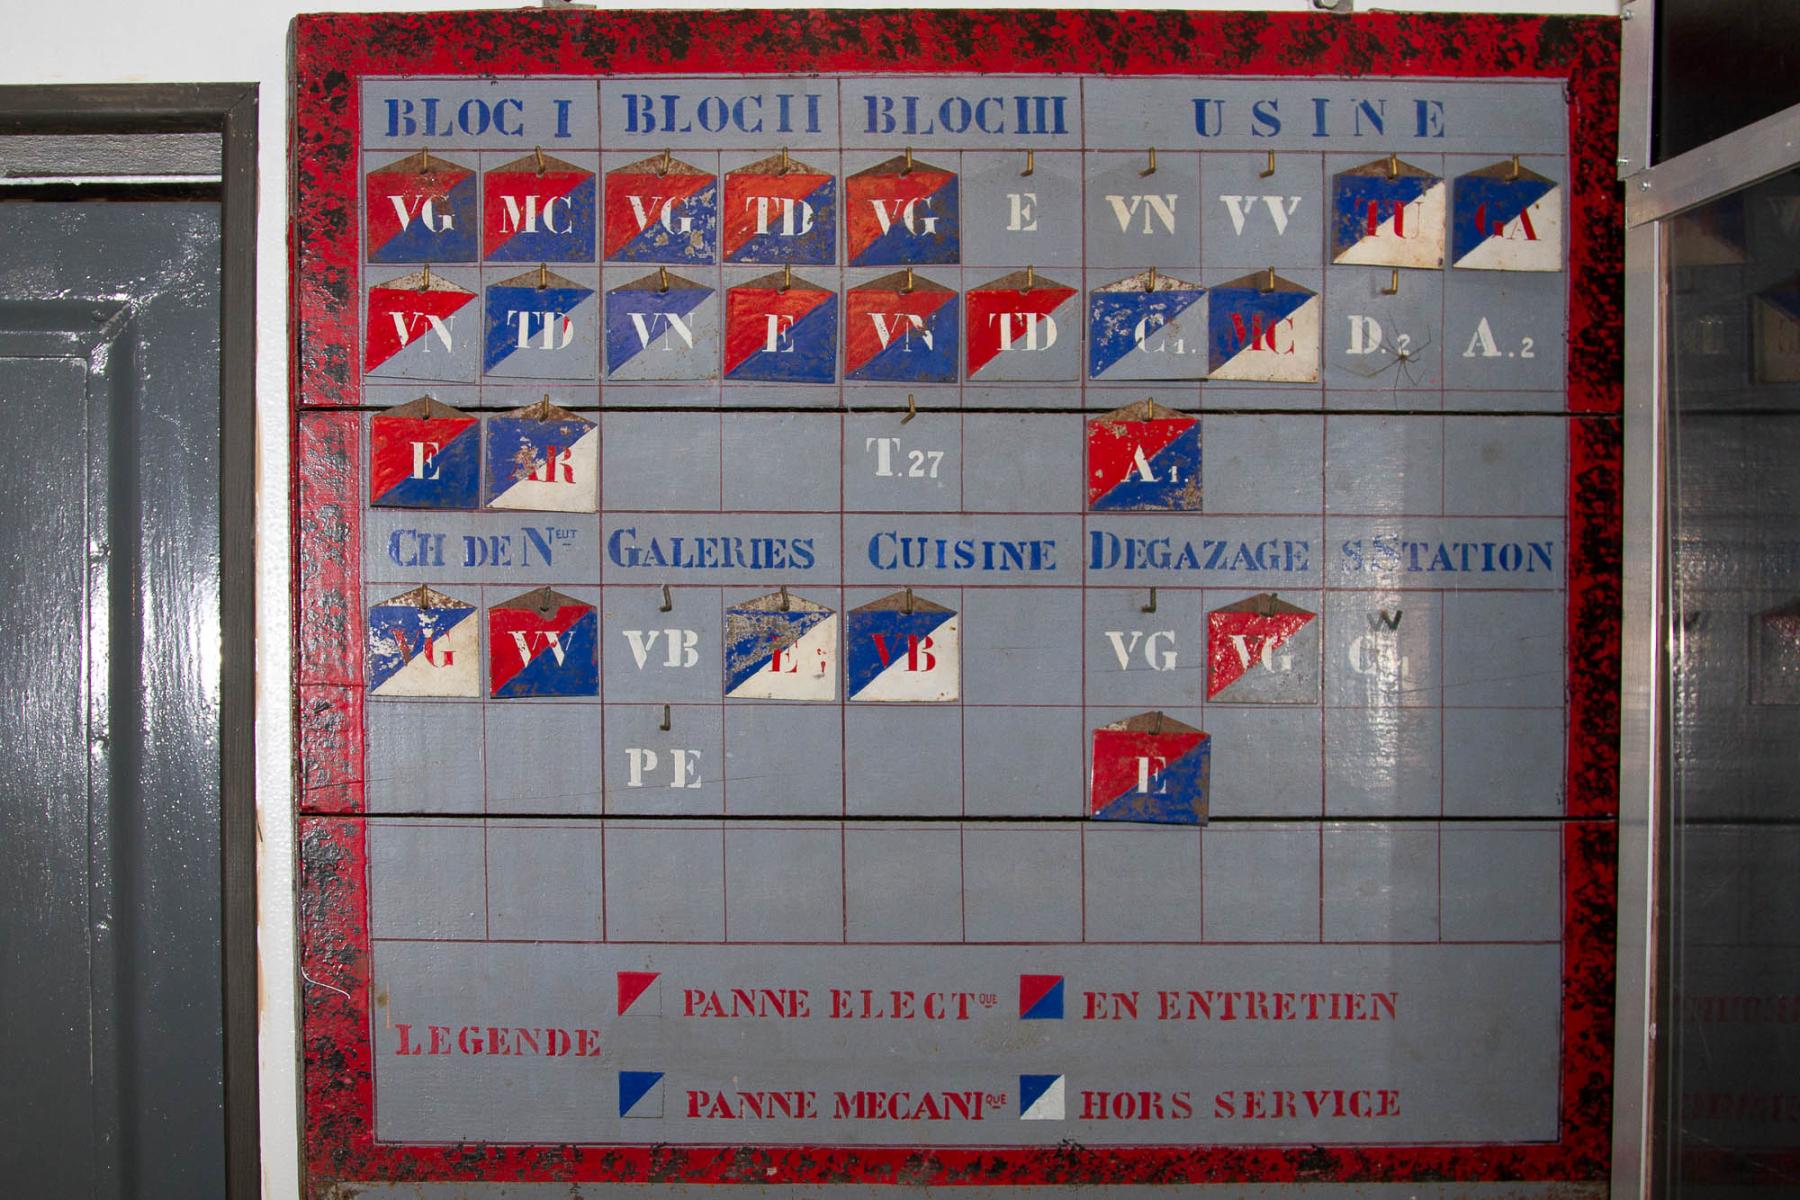 Ligne Maginot - COUME VILLAGE - A29 - (Ouvrage d'infanterie) - Tableau de service de l'usine
Musée de Fermont